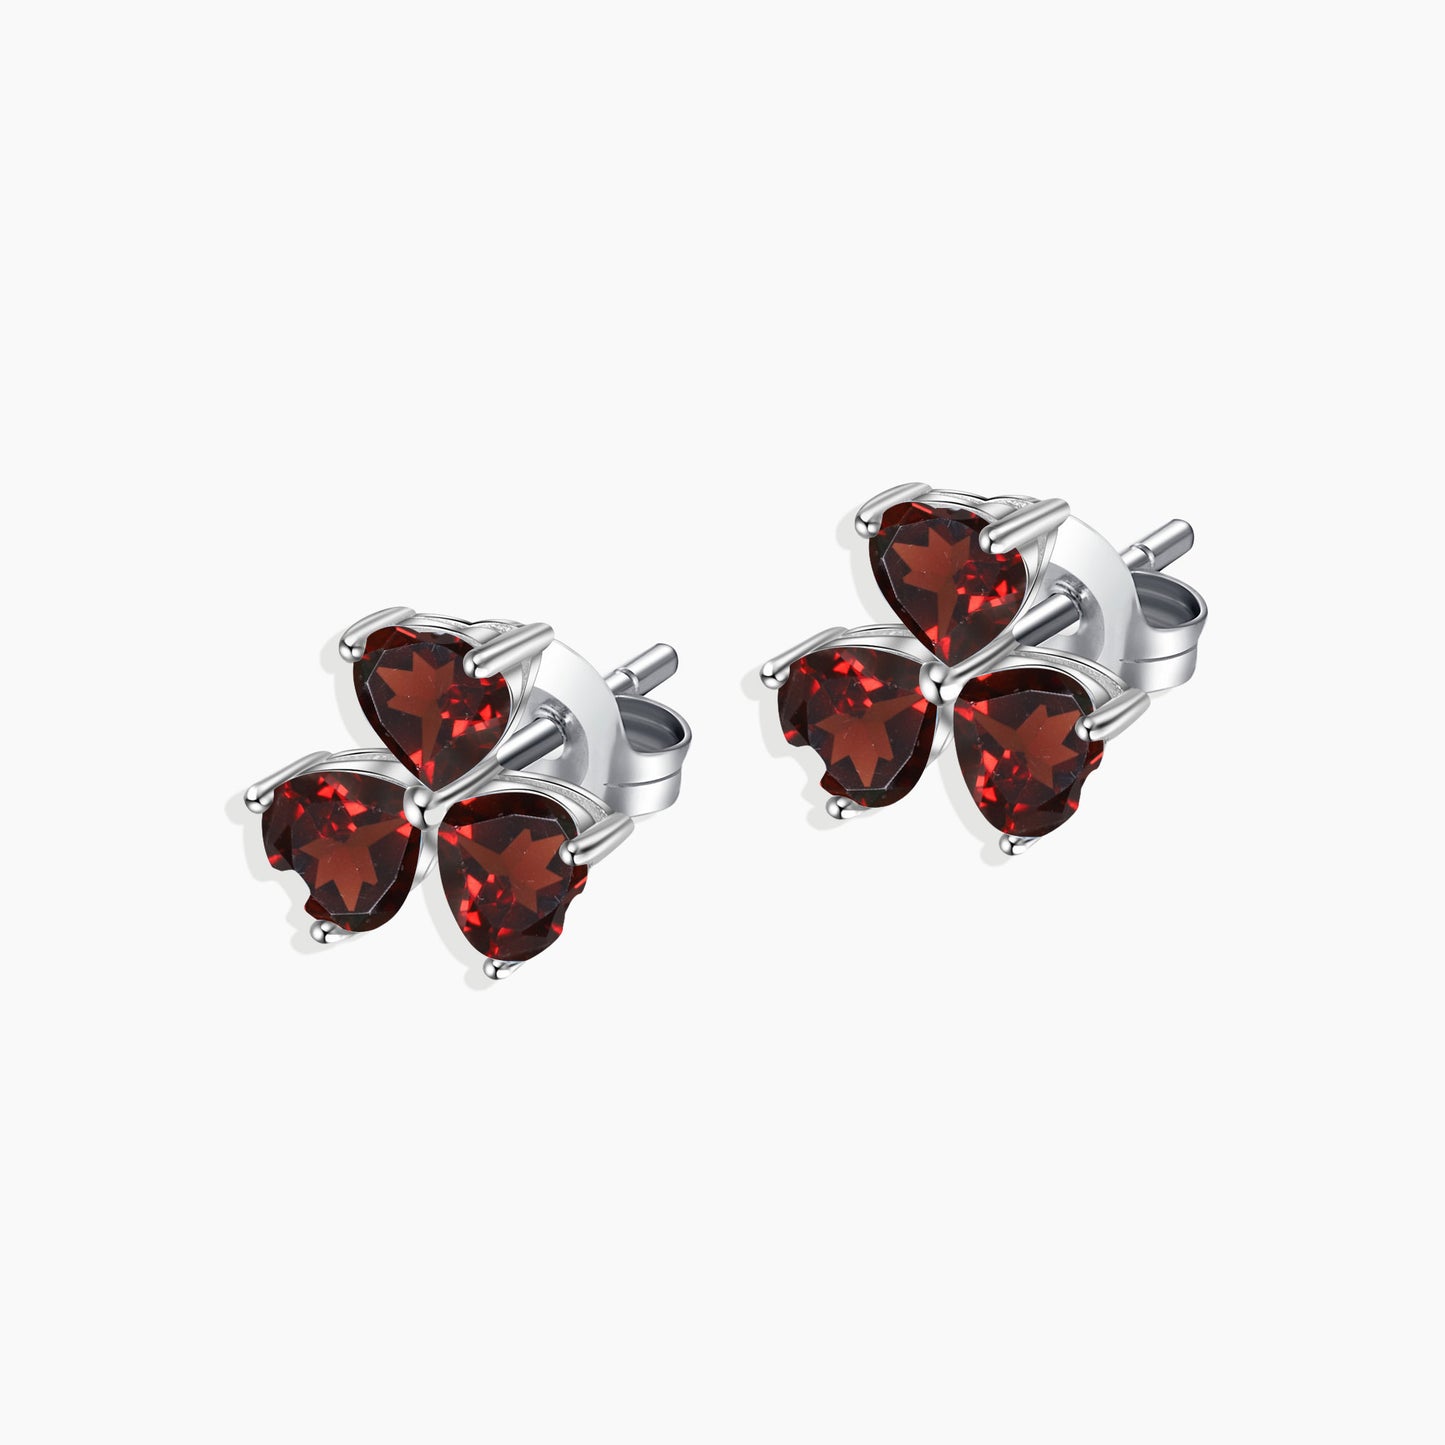 Flower Shape Stud Earrings in Sterling Silver -  Garnet